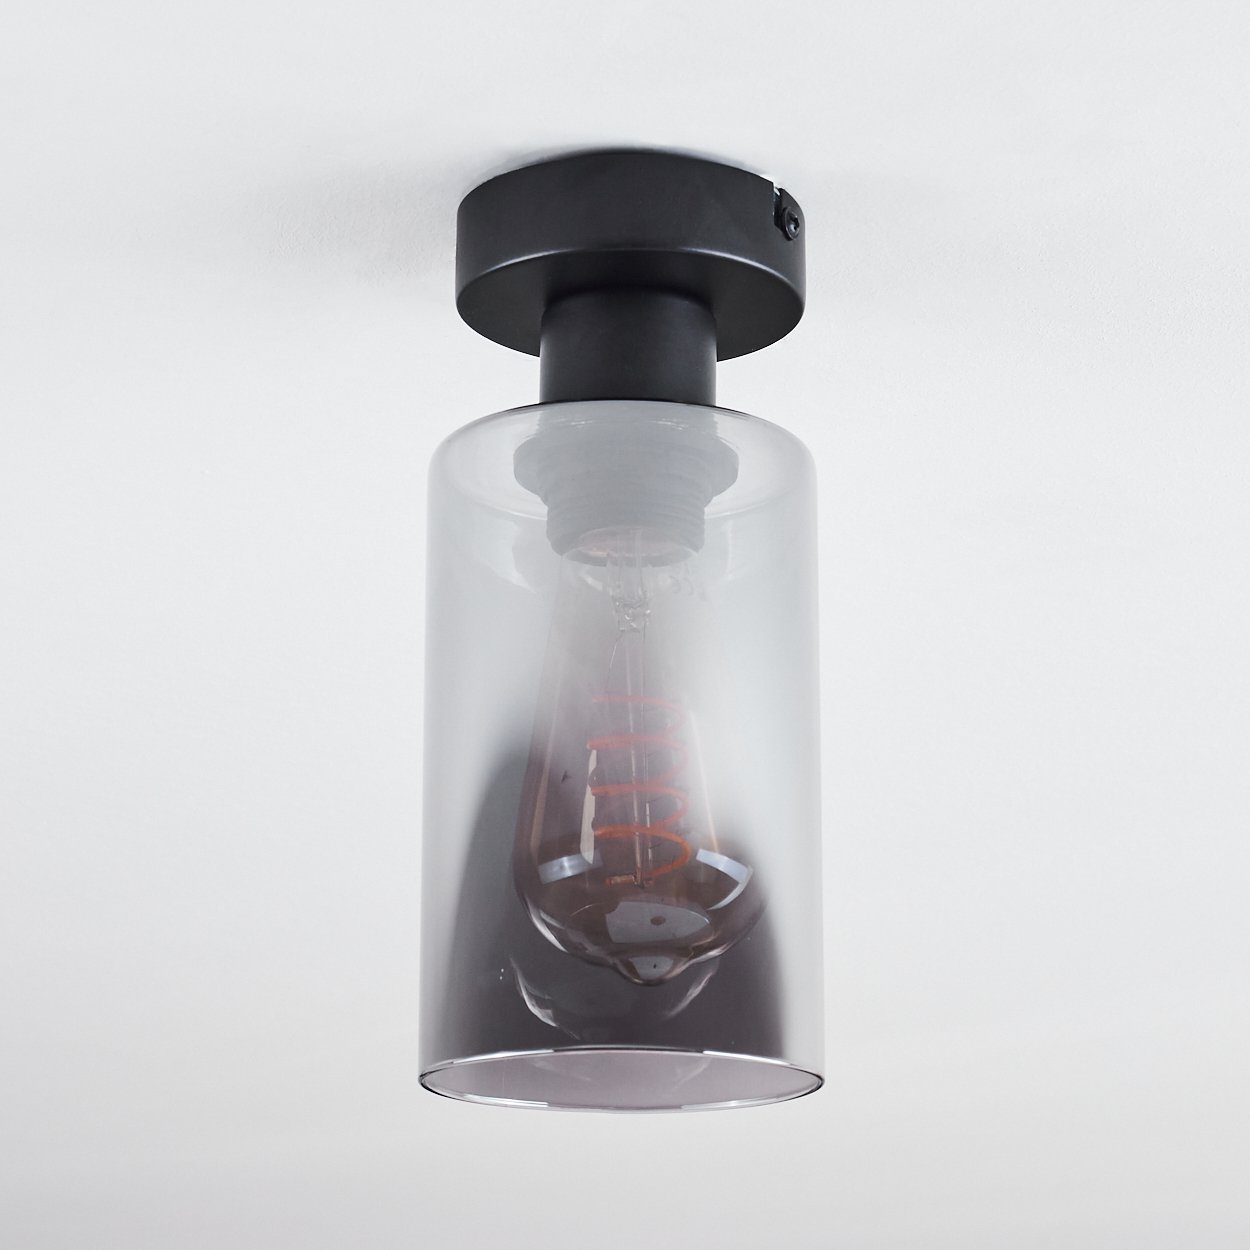 Schirm Deckenlampe Deckenleuchte Glas, moderne E27 in Schwarz/Rauchfarben, 1 aus Retro/Vintage-Design aus Metall/Glas hofstein ohne Leuchtmittel, mit x im